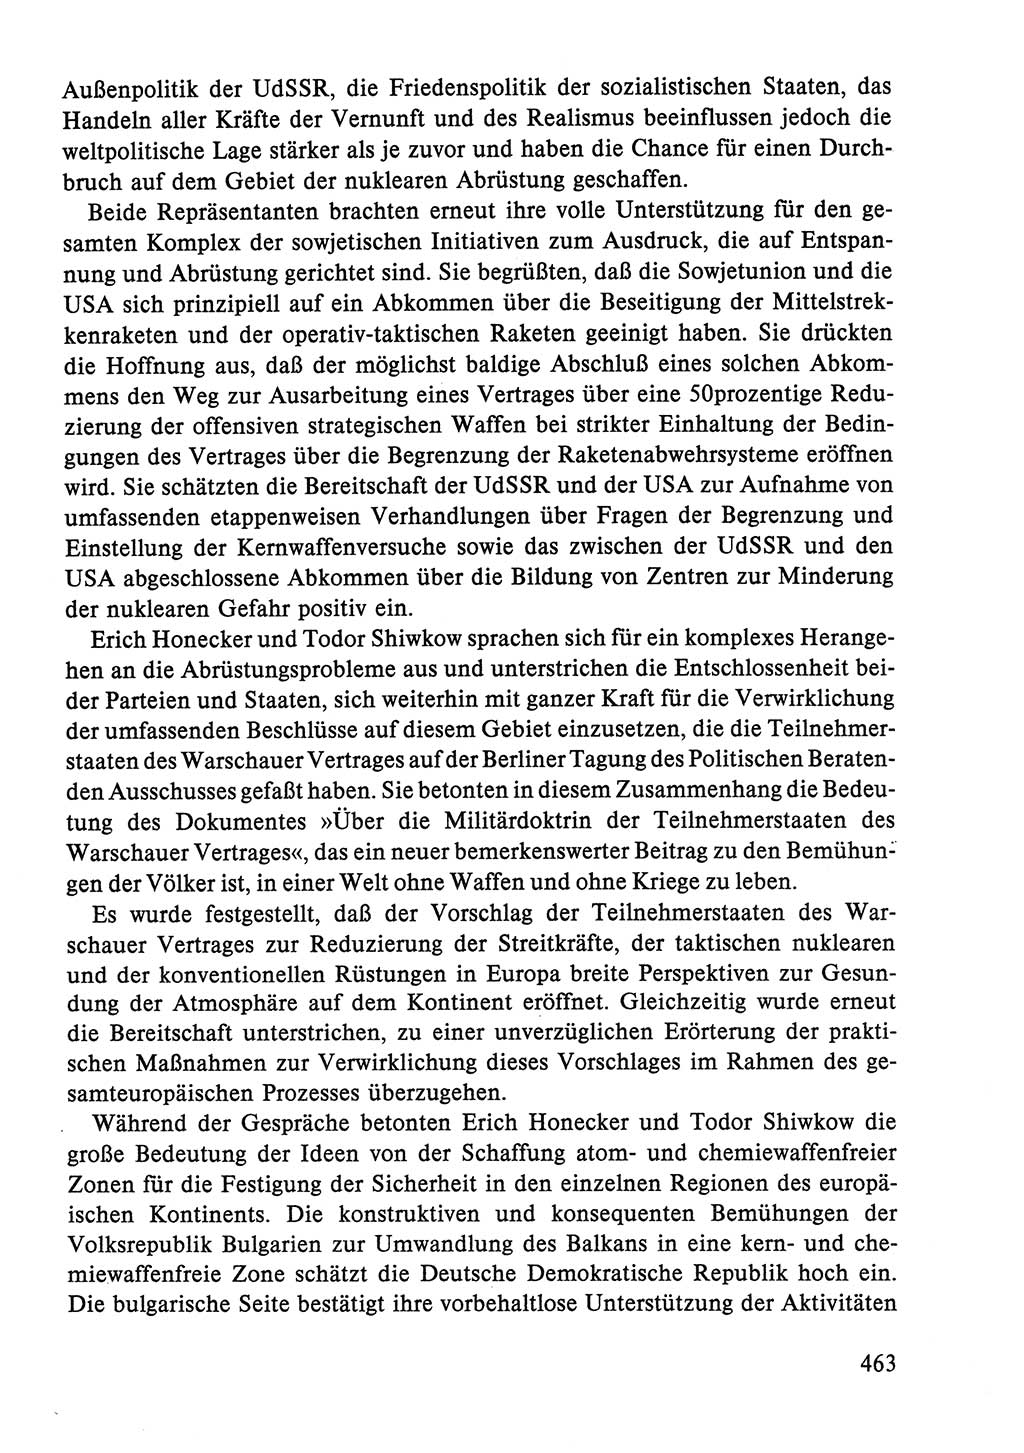 Dokumente der Sozialistischen Einheitspartei Deutschlands (SED) [Deutsche Demokratische Republik (DDR)] 1986-1987, Seite 463 (Dok. SED DDR 1986-1987, S. 463)